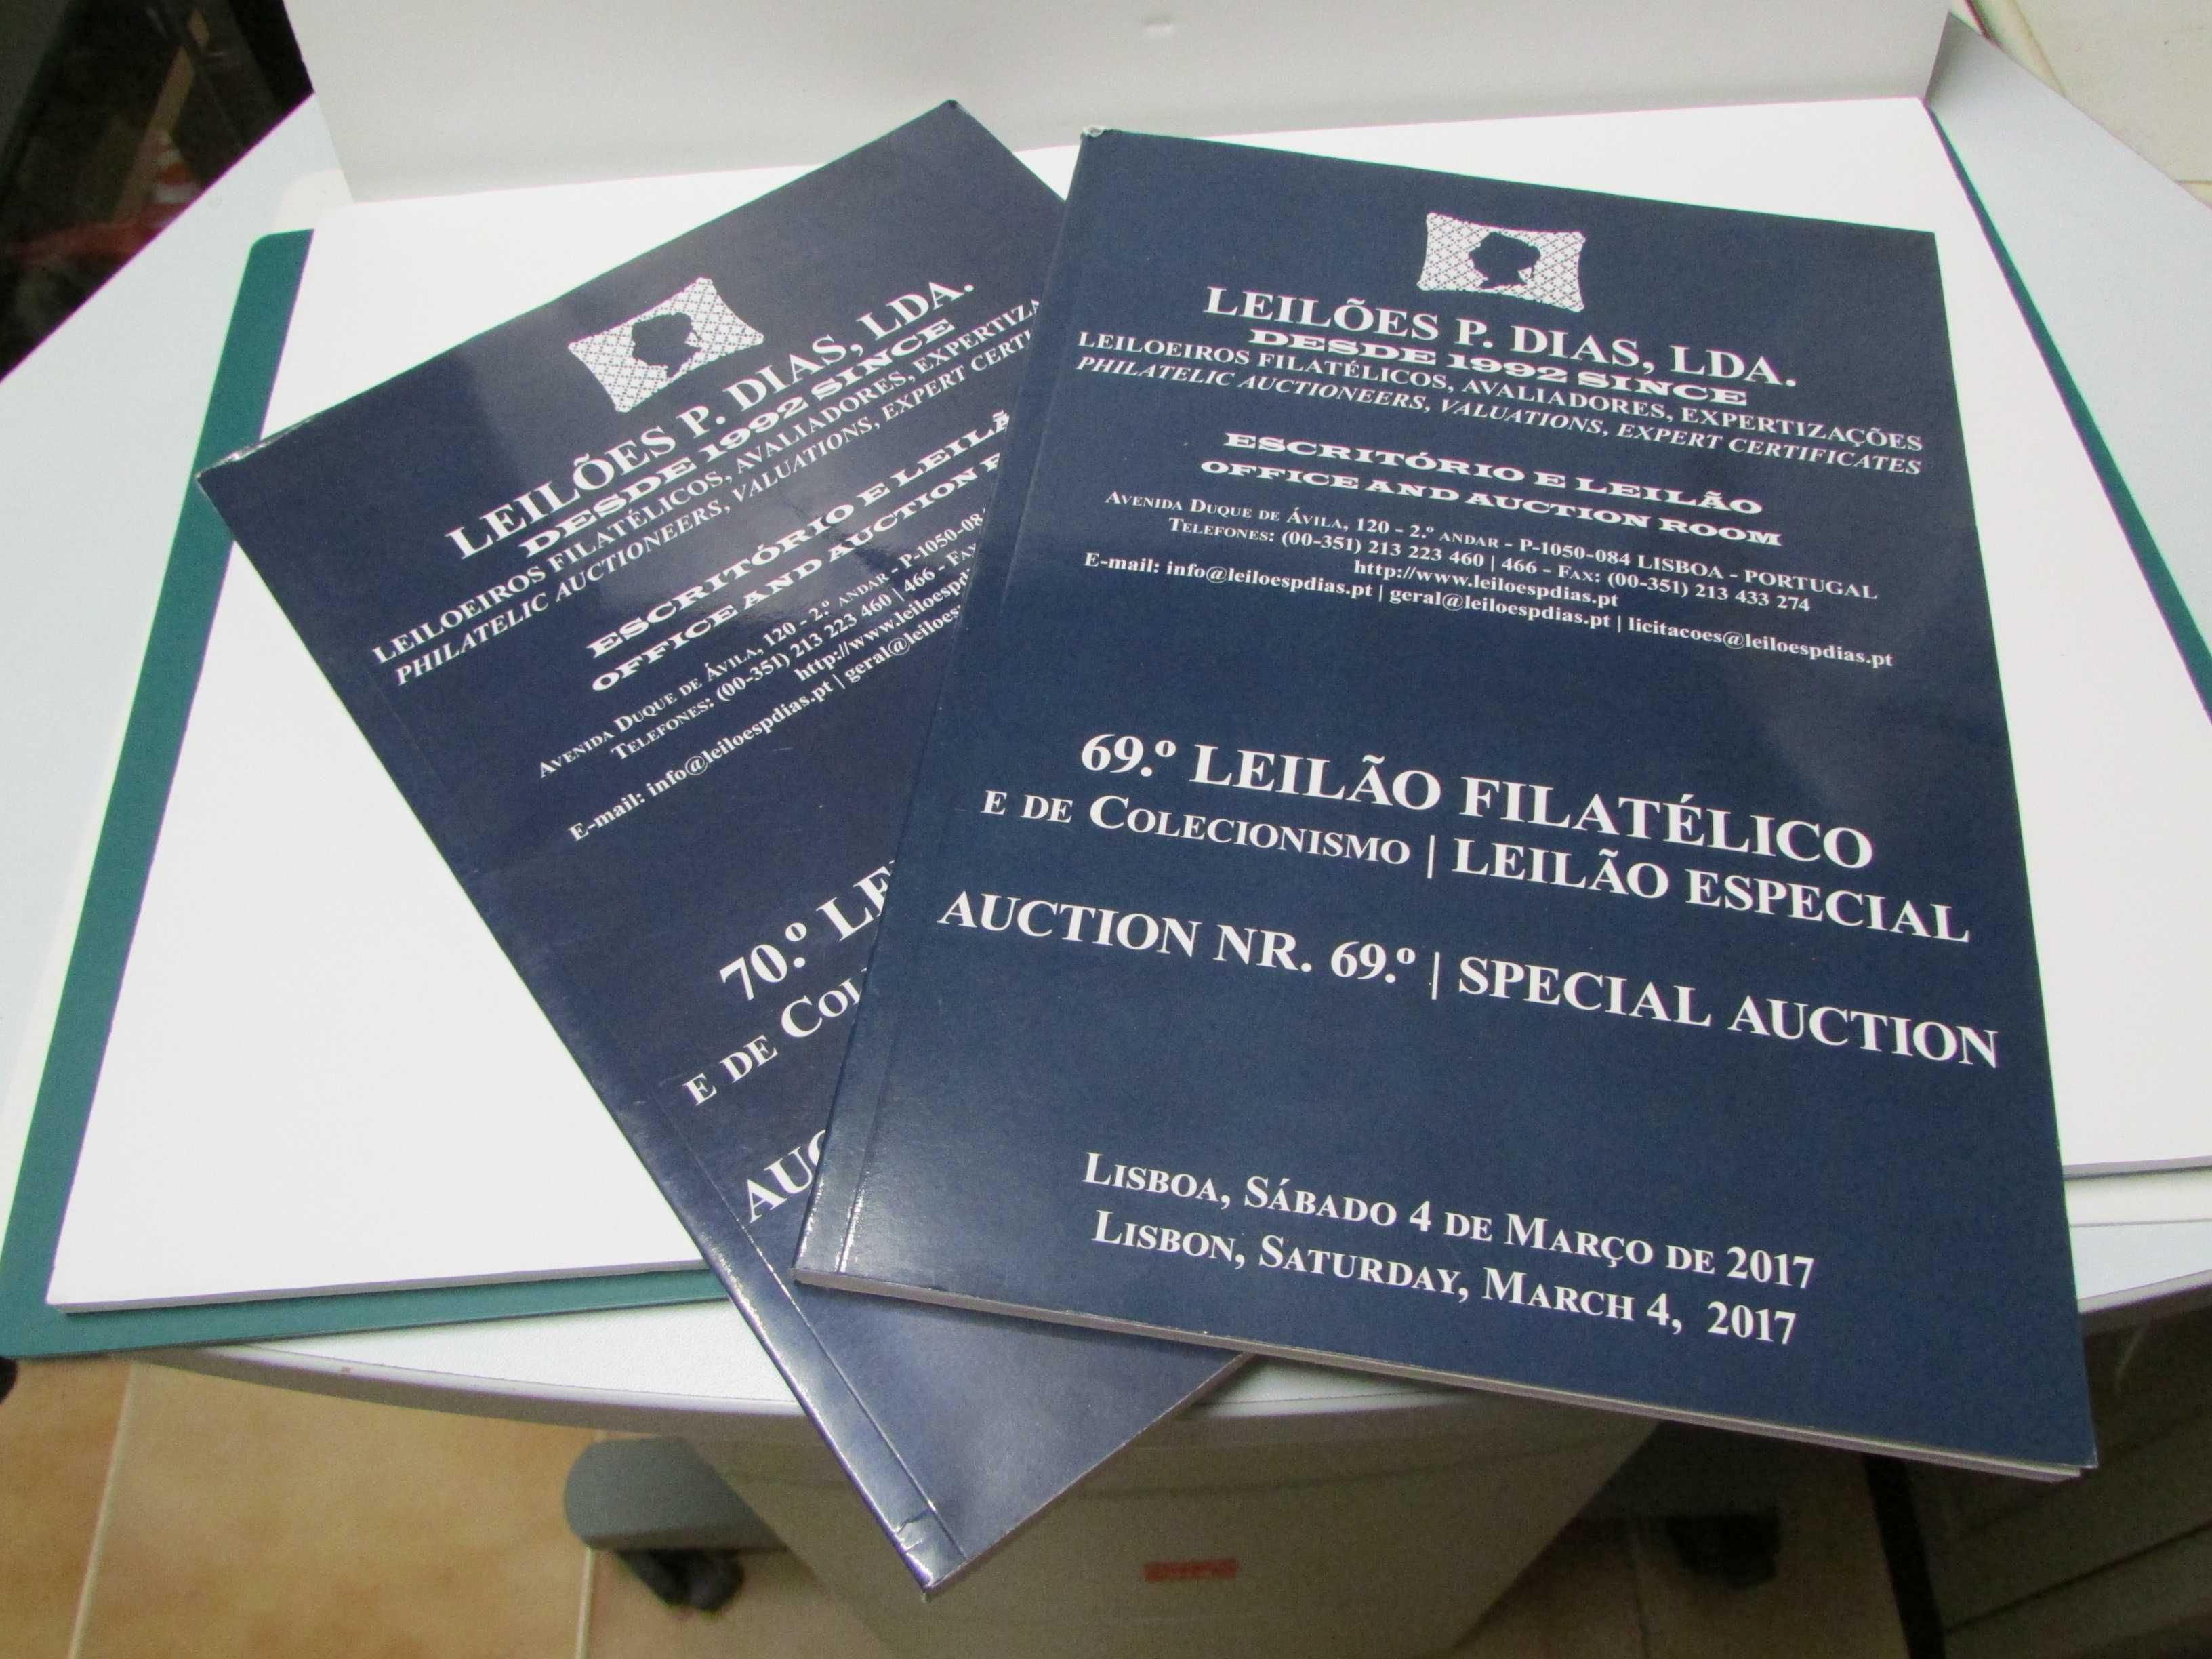 Catálogos Leilões P. Dias: Filatélicos e Colecionismo (ano 2017)